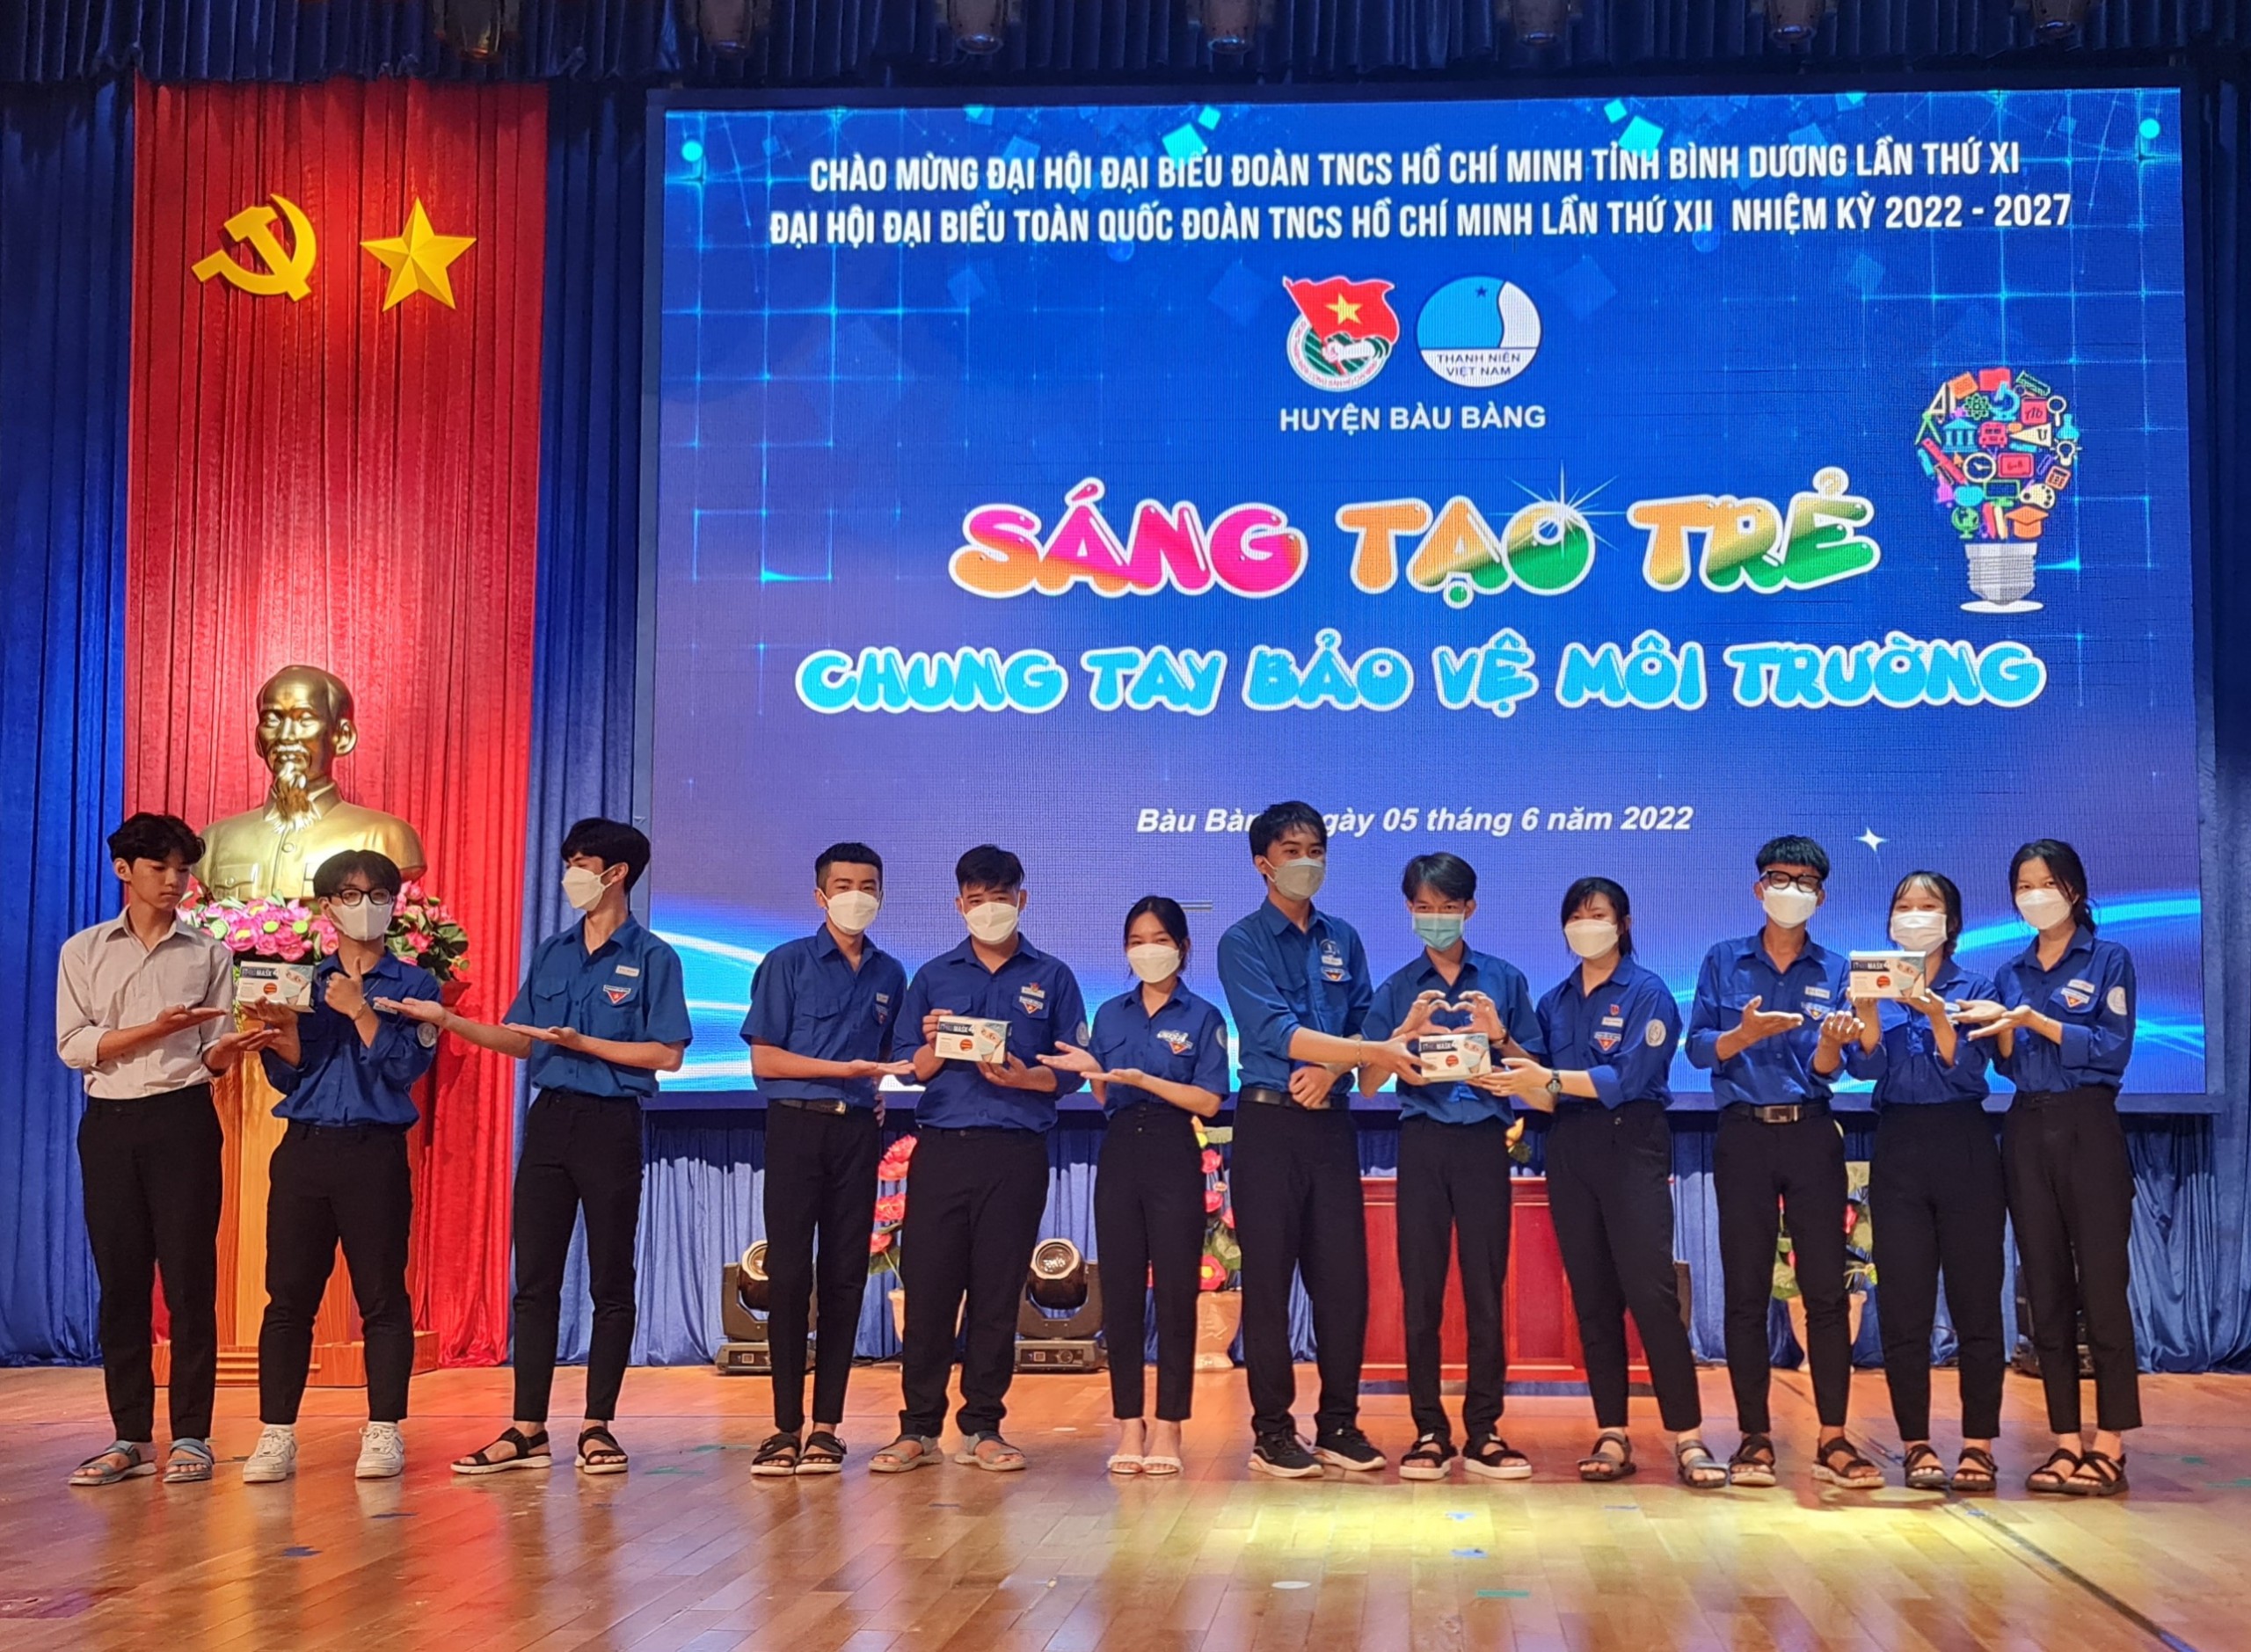 Bàu Bàng tổ chức chương trình sáng tạo trẻ, chung tay bảo vệ môi trường – hưởng ứng ngày môi trường thế giới 05/6